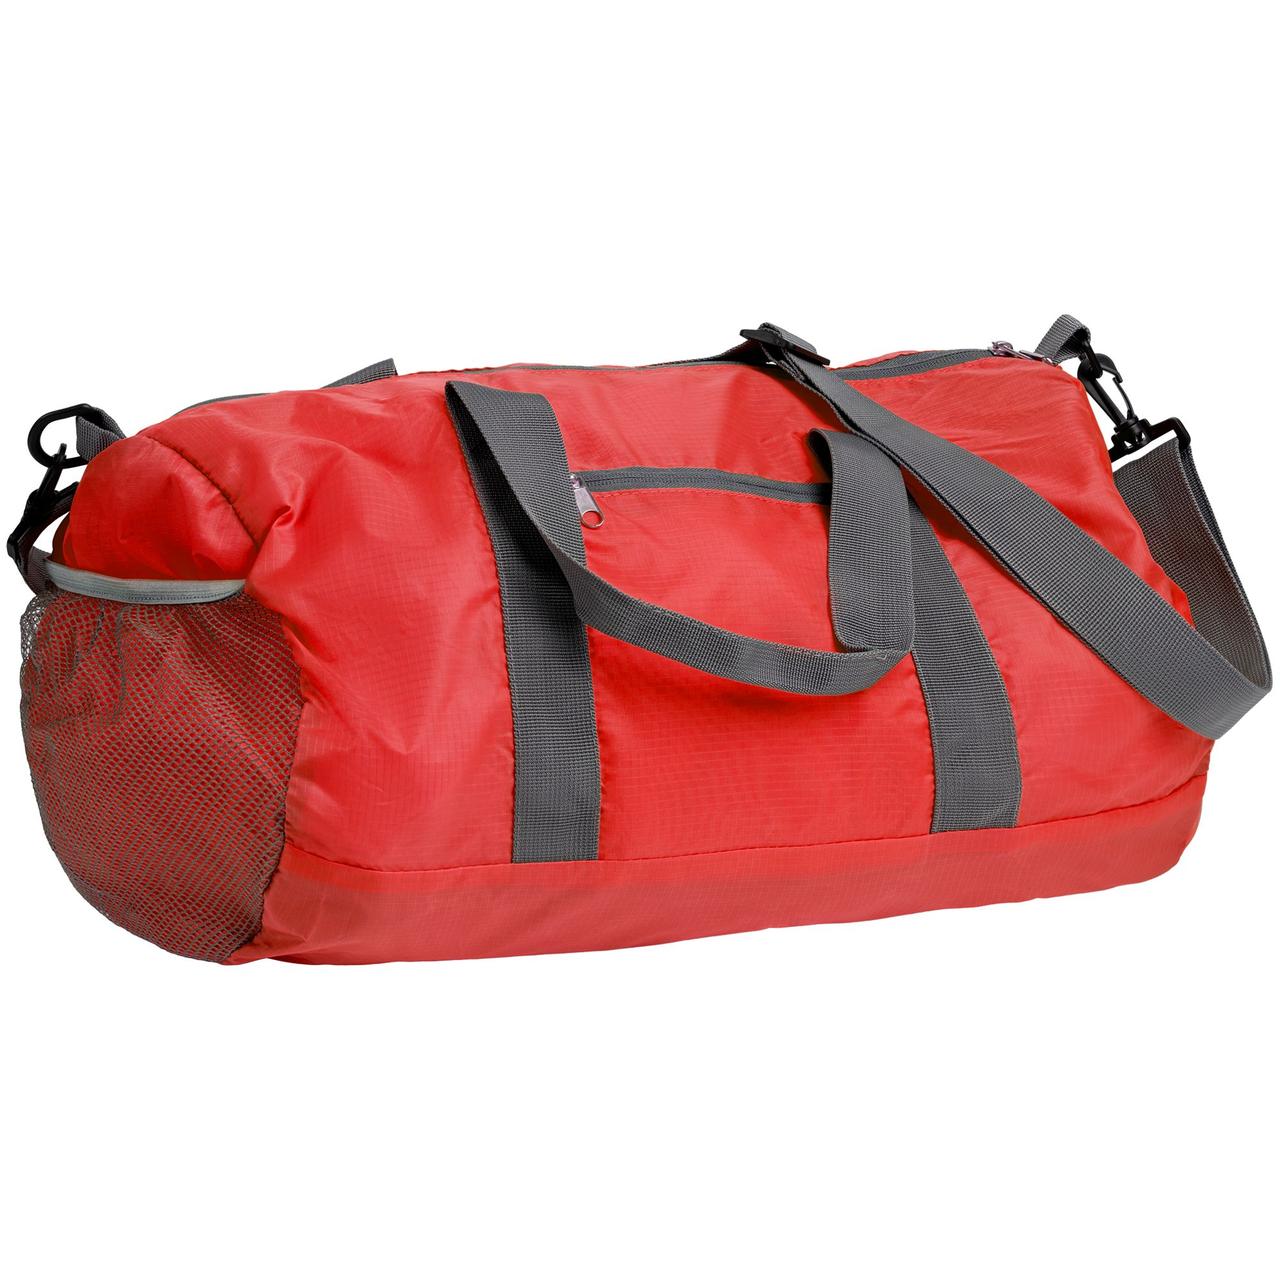 Складная спортивная сумка Josie, красная (артикул 12673.50)